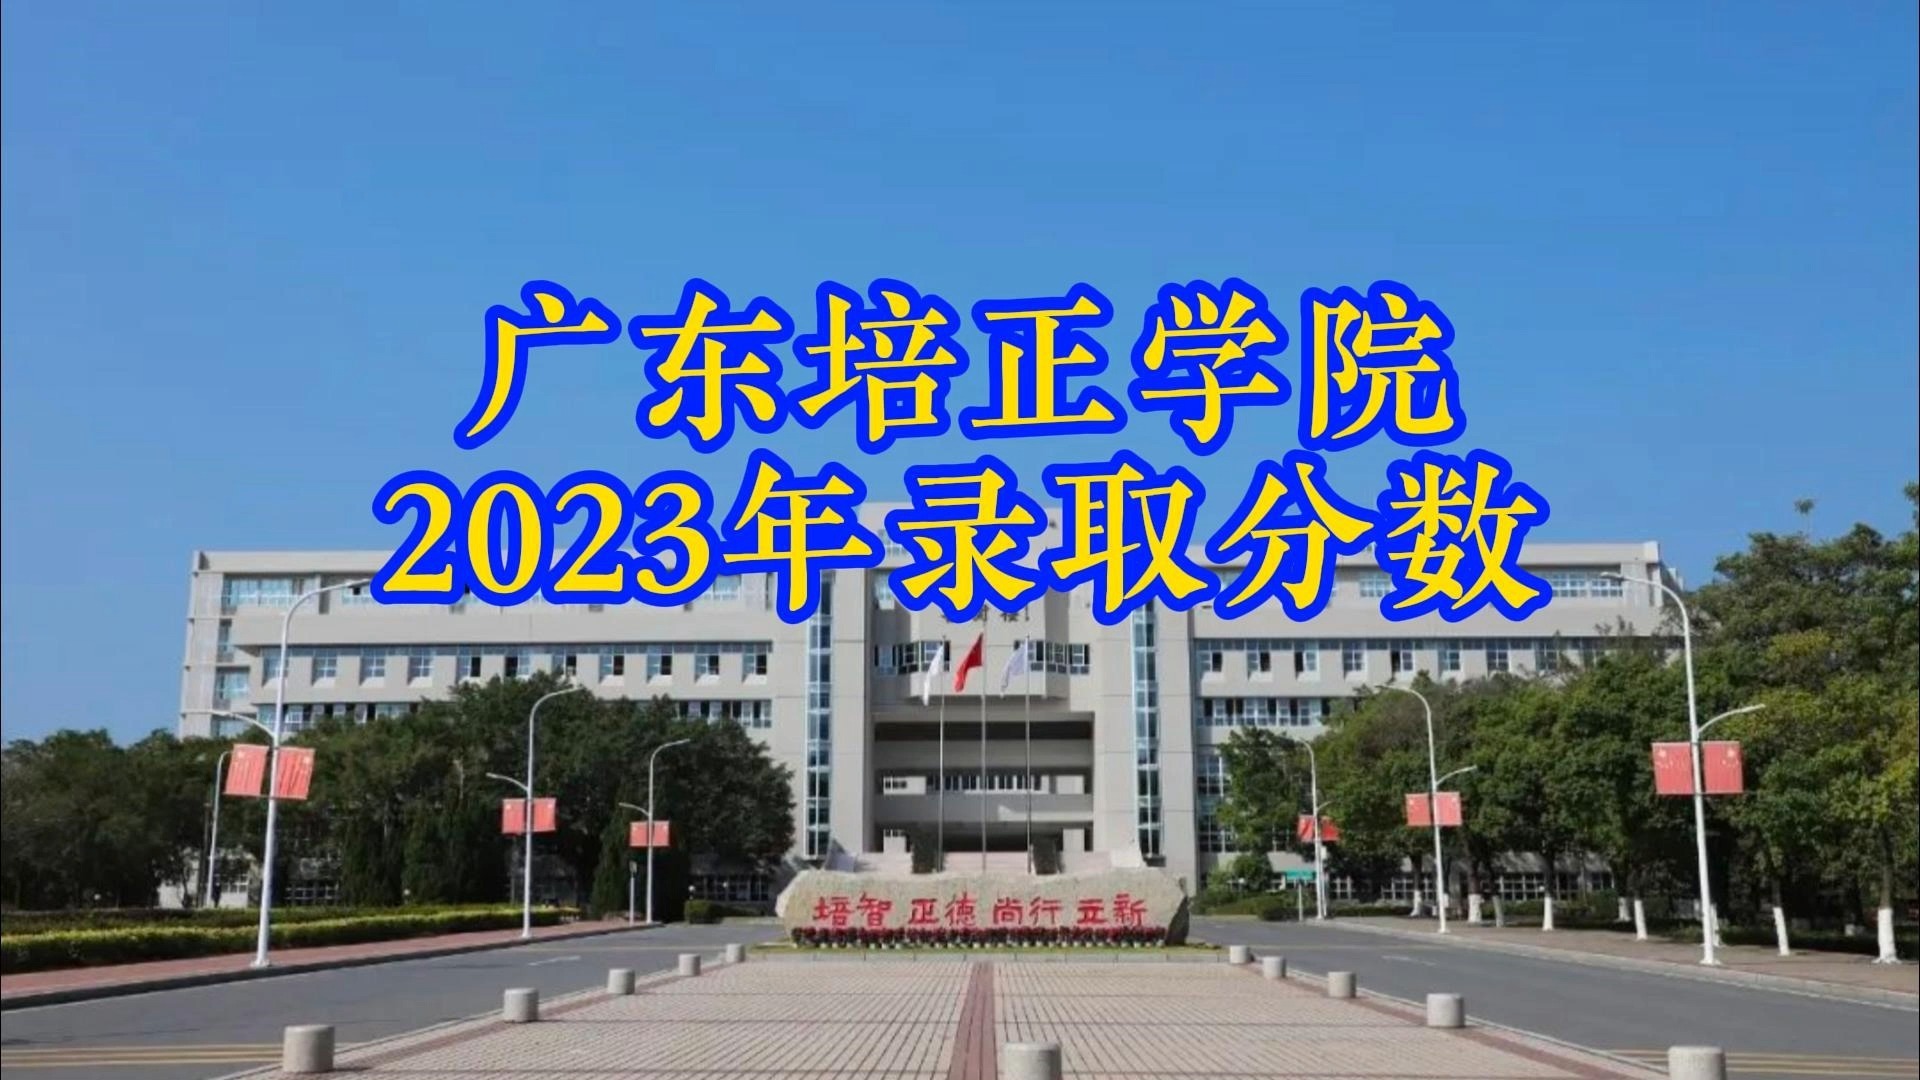 广东培正学院校徽图片